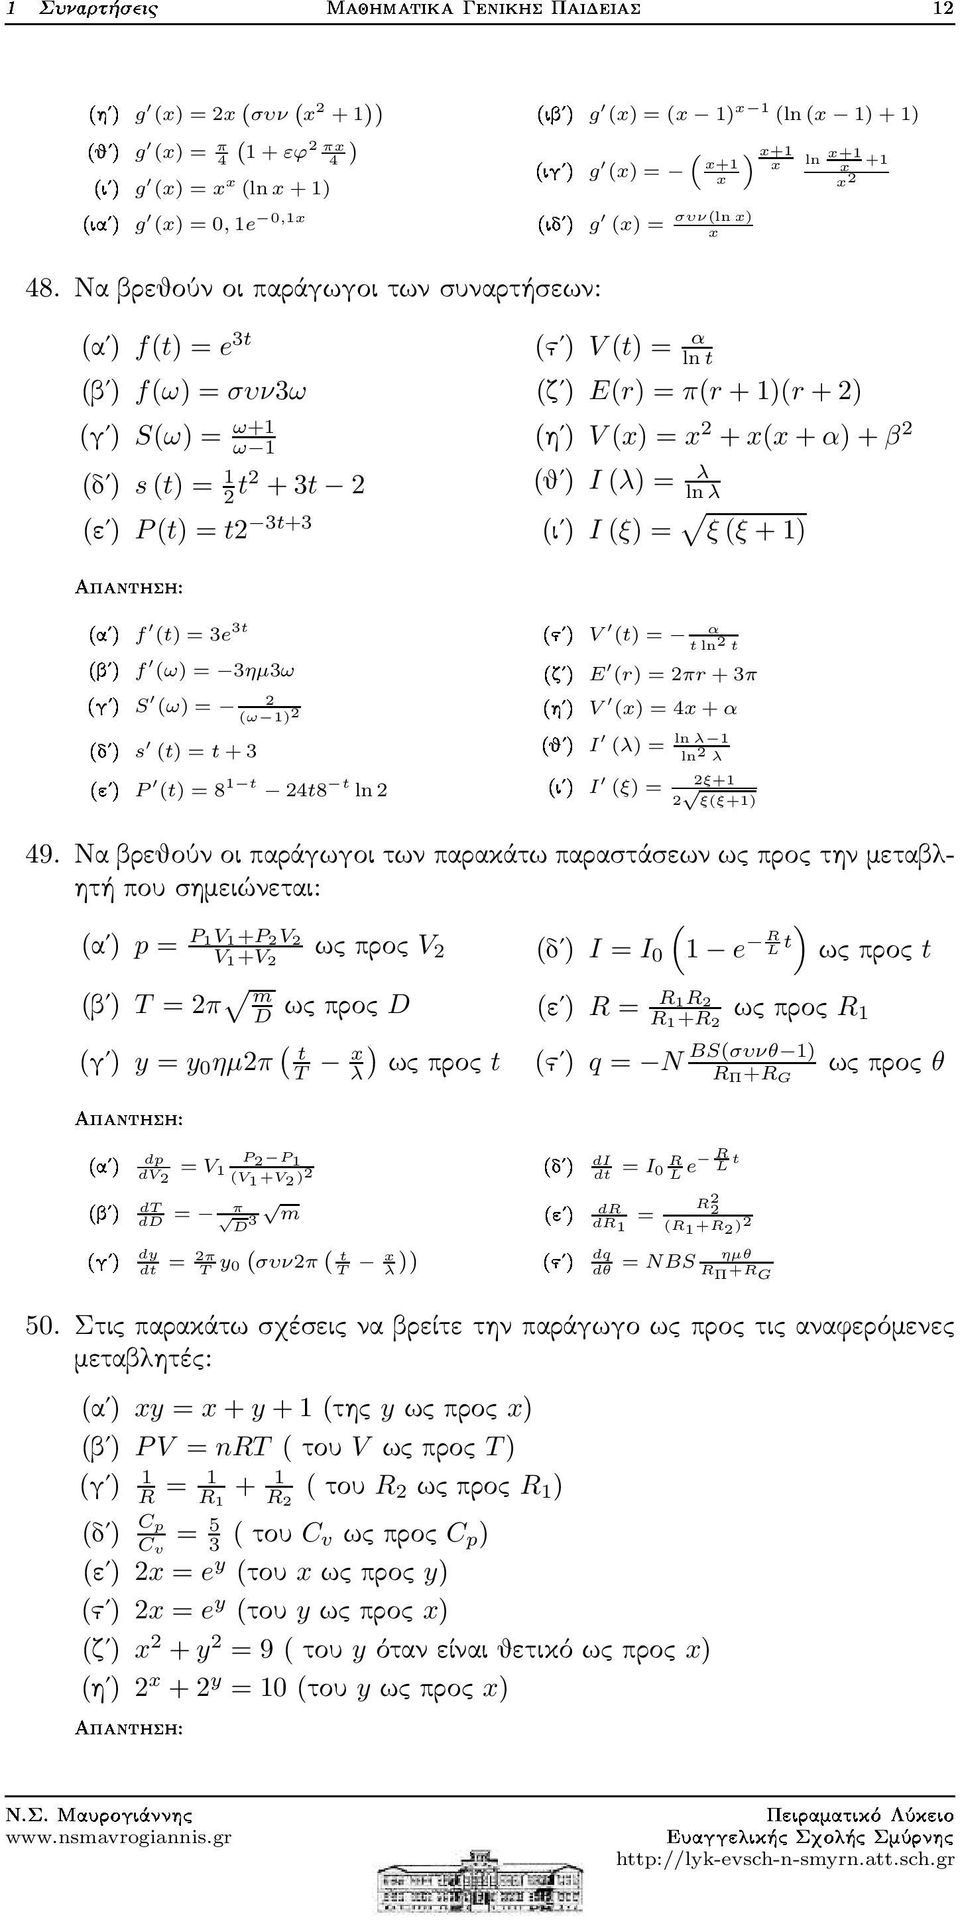 Να βρεθούν οι παράγωγοι των συναρτήσεων: (αʹ) f(t) = e 3t (βʹ) f(ω) = συν3ω (γʹ) S(ω) = ω+1 ω 1 (δʹ) s(t) = 1 t +3t (εʹ) P(t) = t 3t+3 (ϛʹ) V(t) = α lnt (ζʹ) E(r) = π(r +1)(r+) (ηʹ) V(x) = x